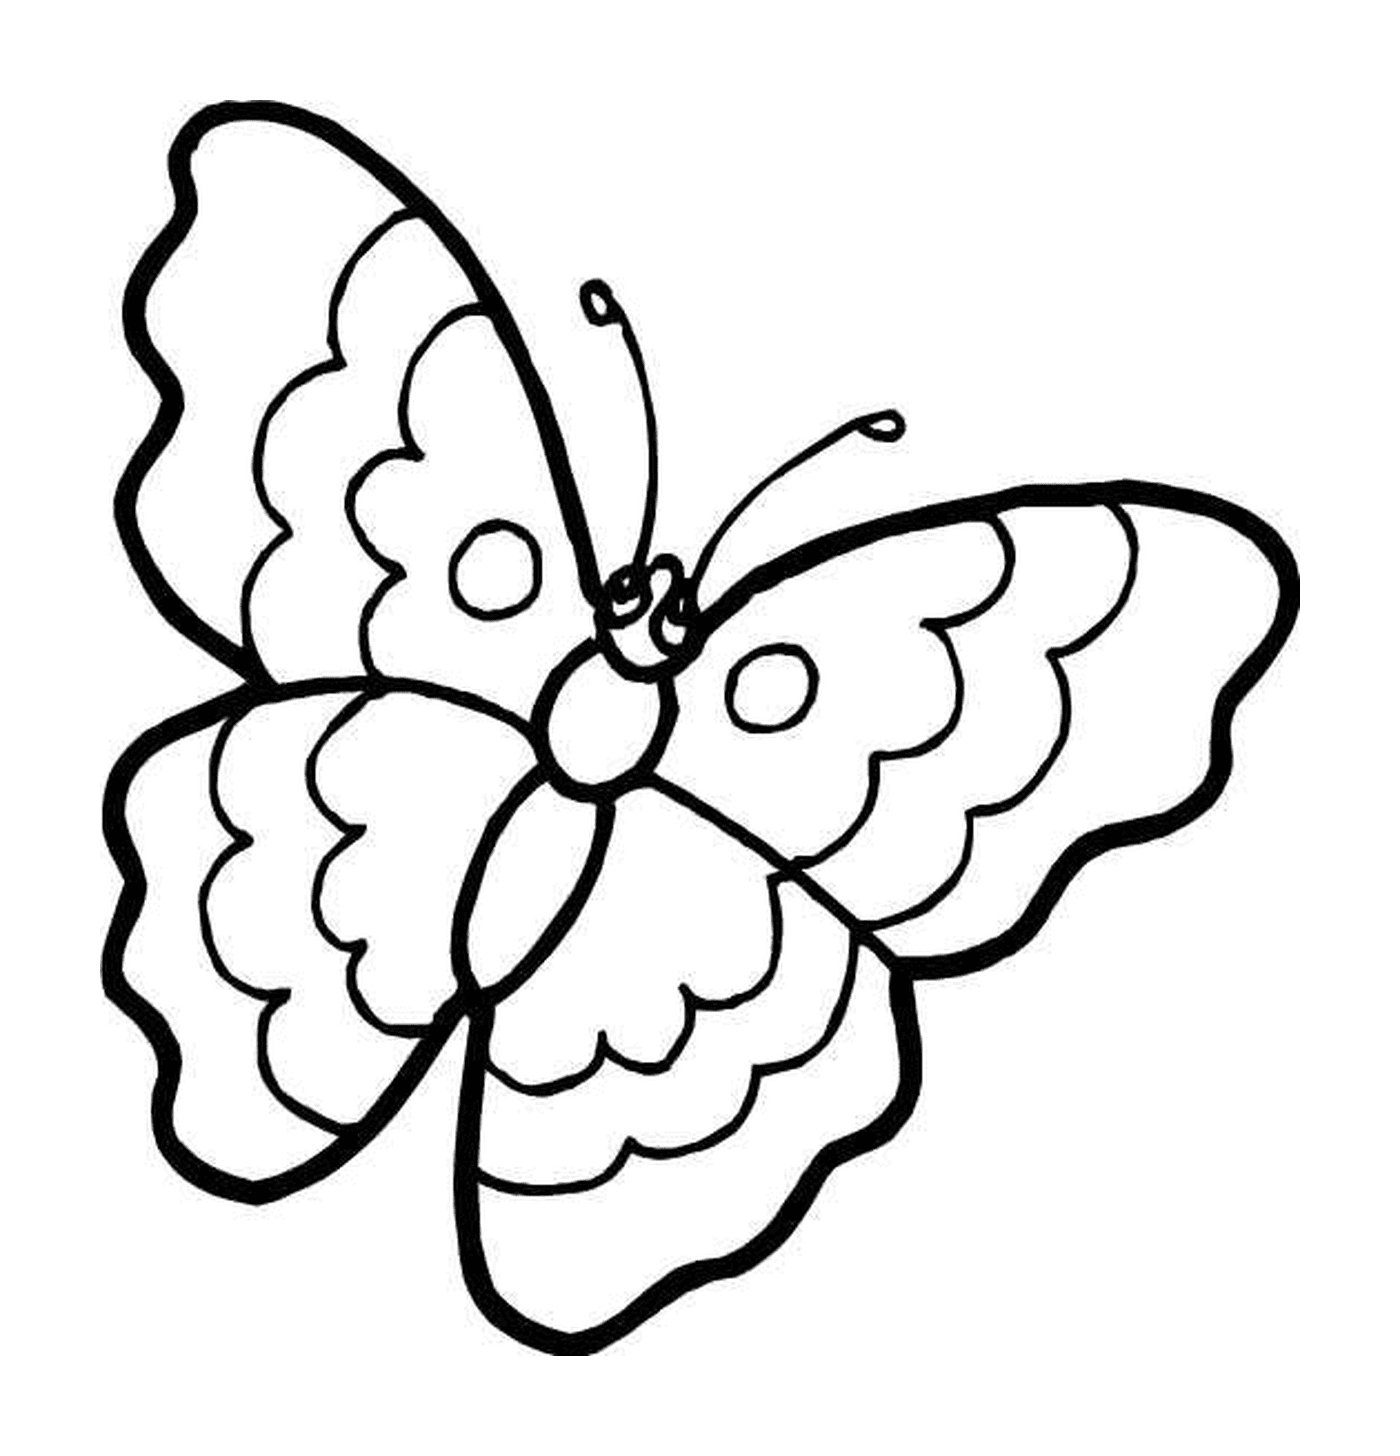  Mariposa delicada con patrones vibrantes 